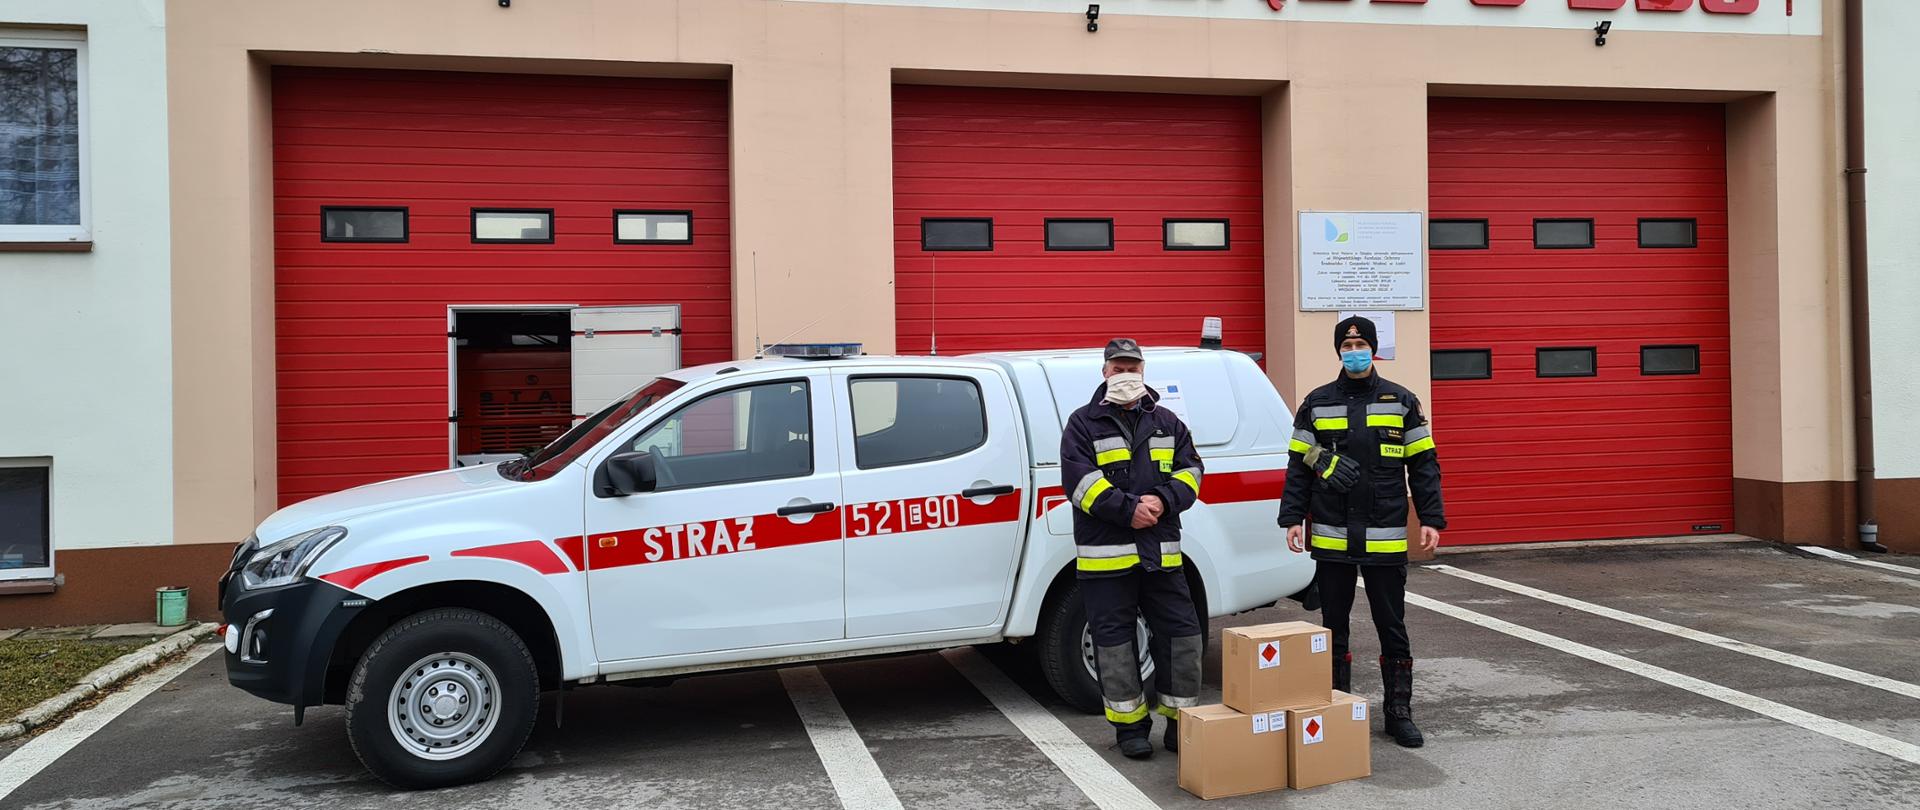 Na zdjęciu widać dwóch mężczyzn stojących na tle samochodu strażackiego typu SUV w kolorze białym, za którym znajduję się część budynku remizy OSP Cielądz. Budynek jest beżowy z czerwoną bramą garażową. Jeden z mężczyzn to ochotnik z OSP, ubrany jest w stój strażacki w kolorze granatowym, a drugi to strażak PSP Rawa Mazowiecka, ubrany jest w stój strażacki - granatowy/czarny. Między nimi stoją 3 pudła z środkami DO DEZYNFEKCJI.